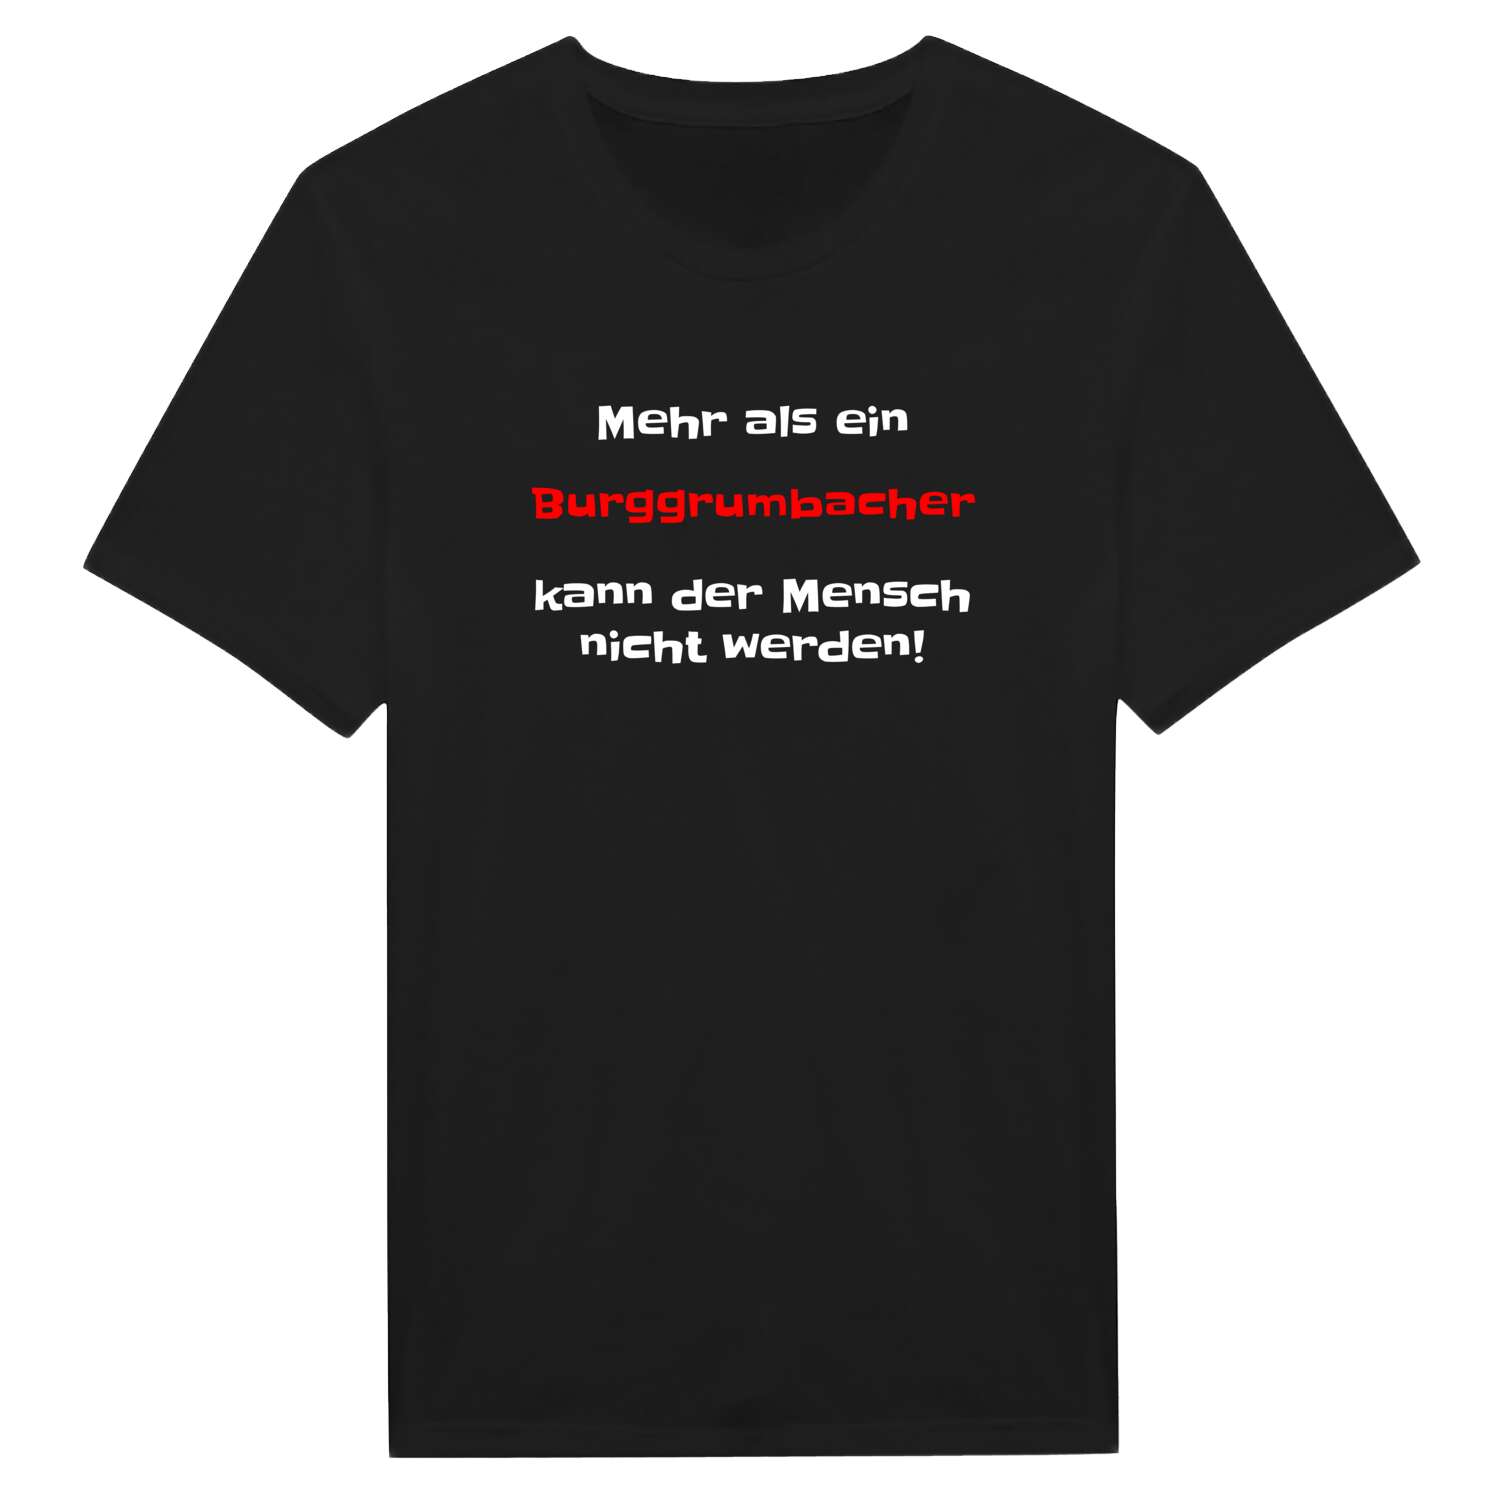 Burggrumbach T-Shirt »Mehr als ein«